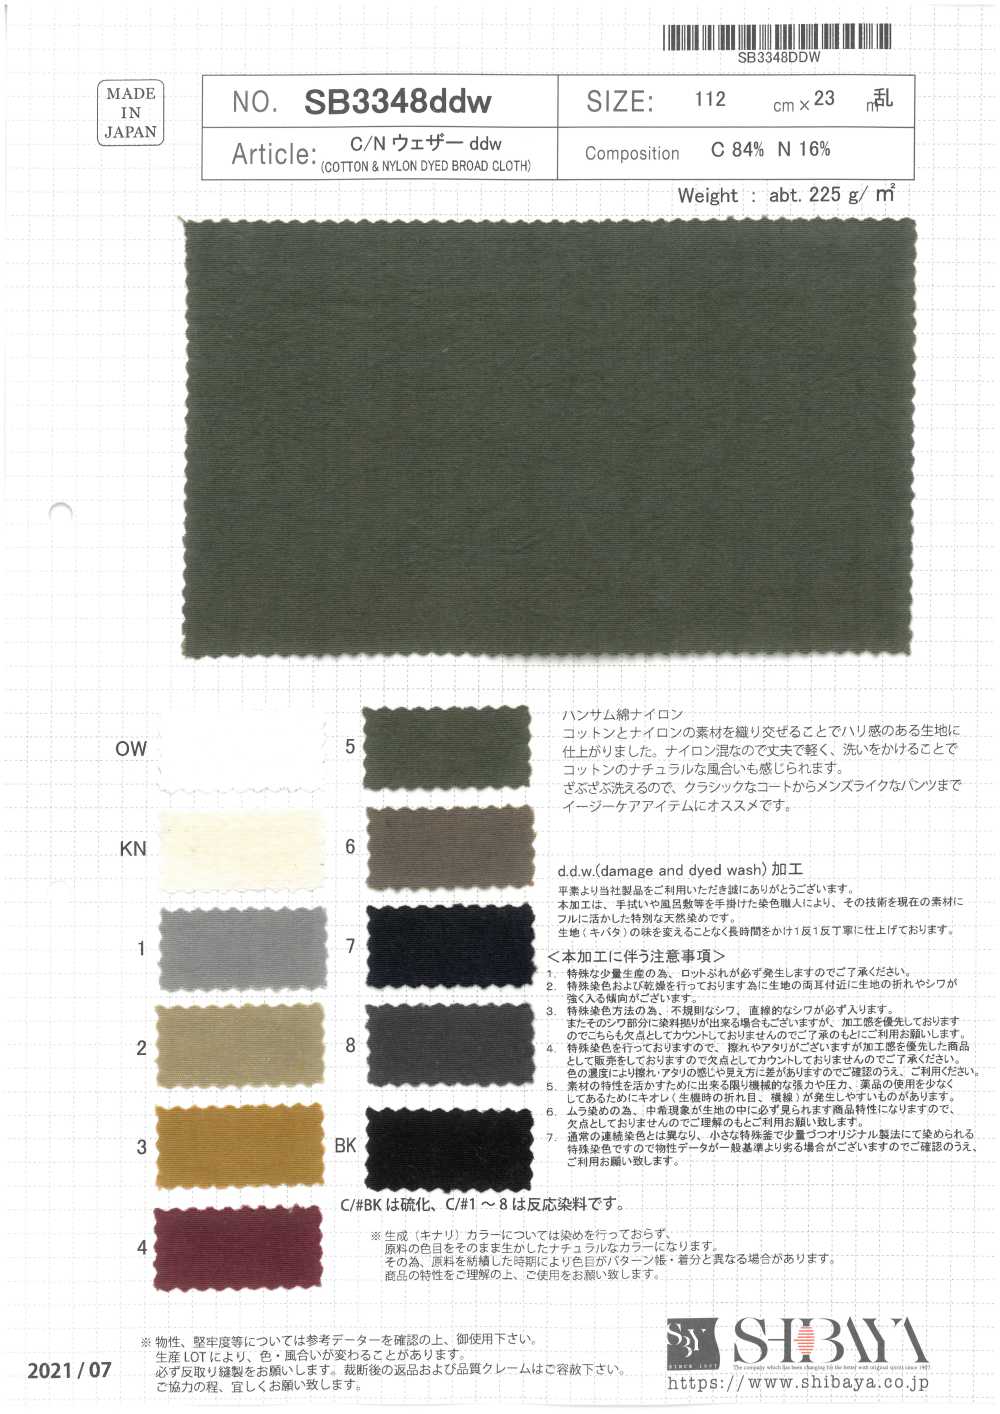 SB3348ddw Baumwoll-/Nylon-Wettertuch Ddw[Textilgewebe] SHIBAYA